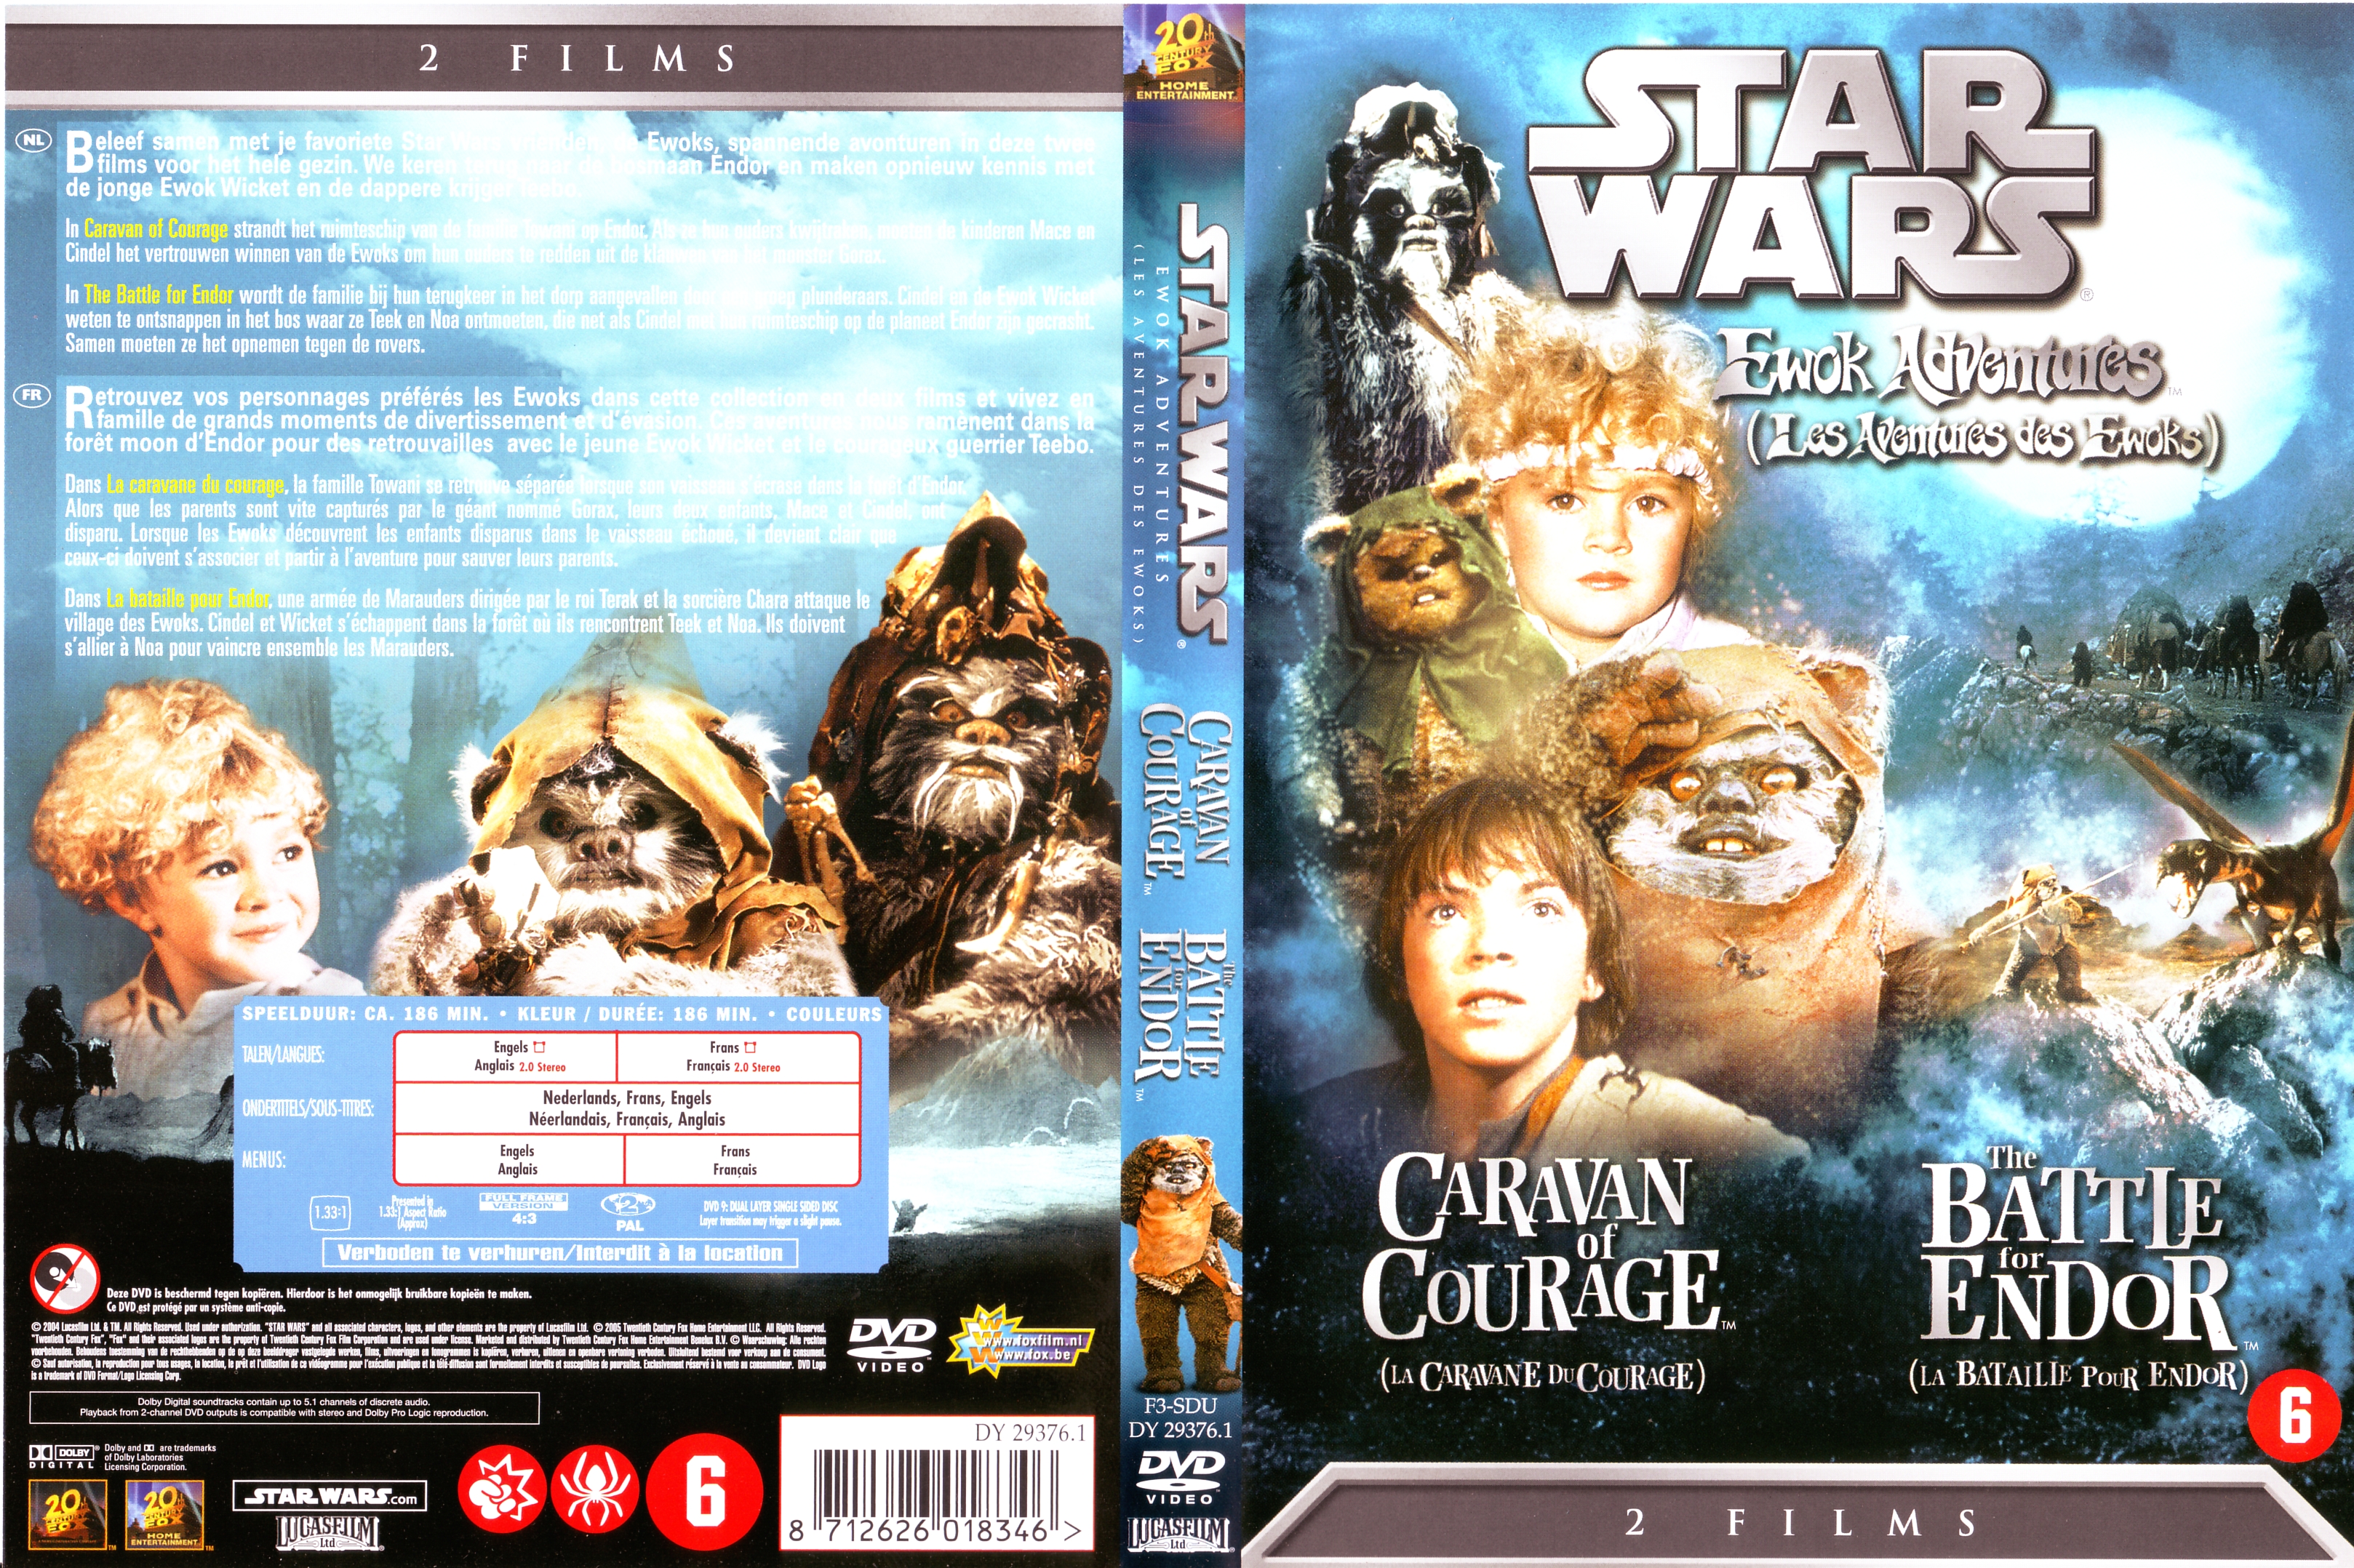 Jaquette DVD Star Wars Les aventures des Ewoks v2